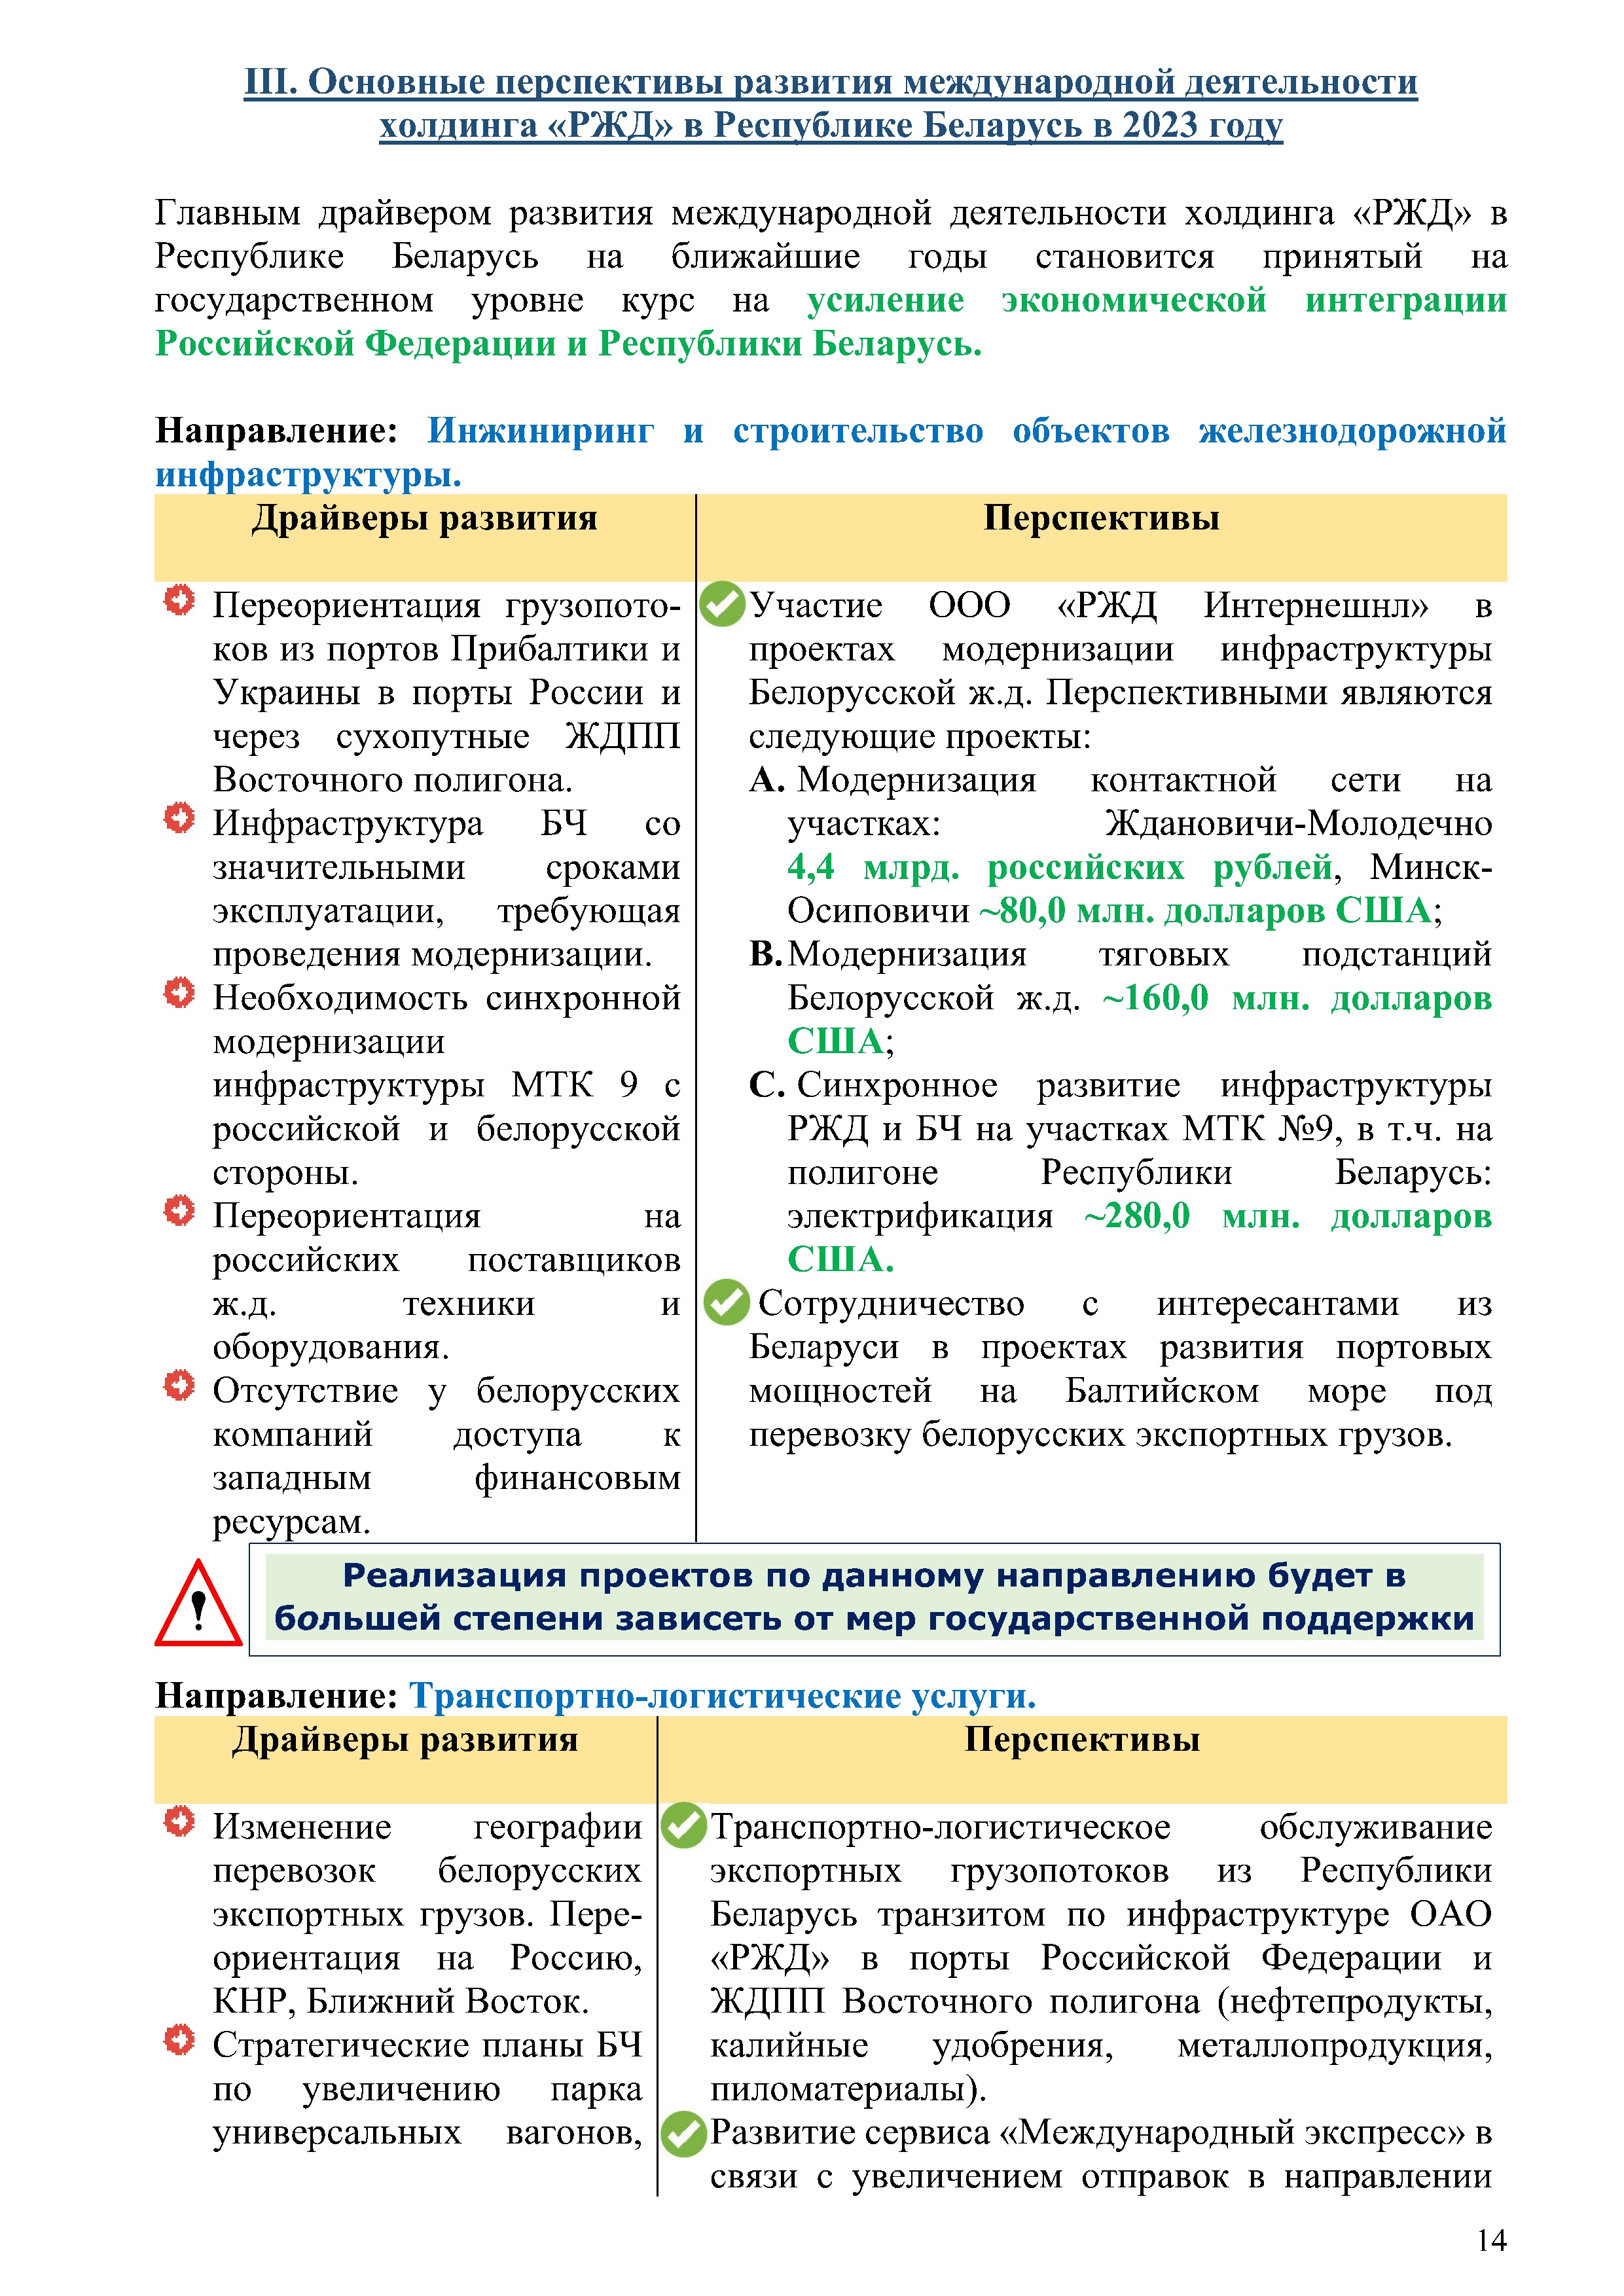 Отчет о работе представительства ОАО «РЖД» в Республике Беларусь за 2022 год (Страница 13)